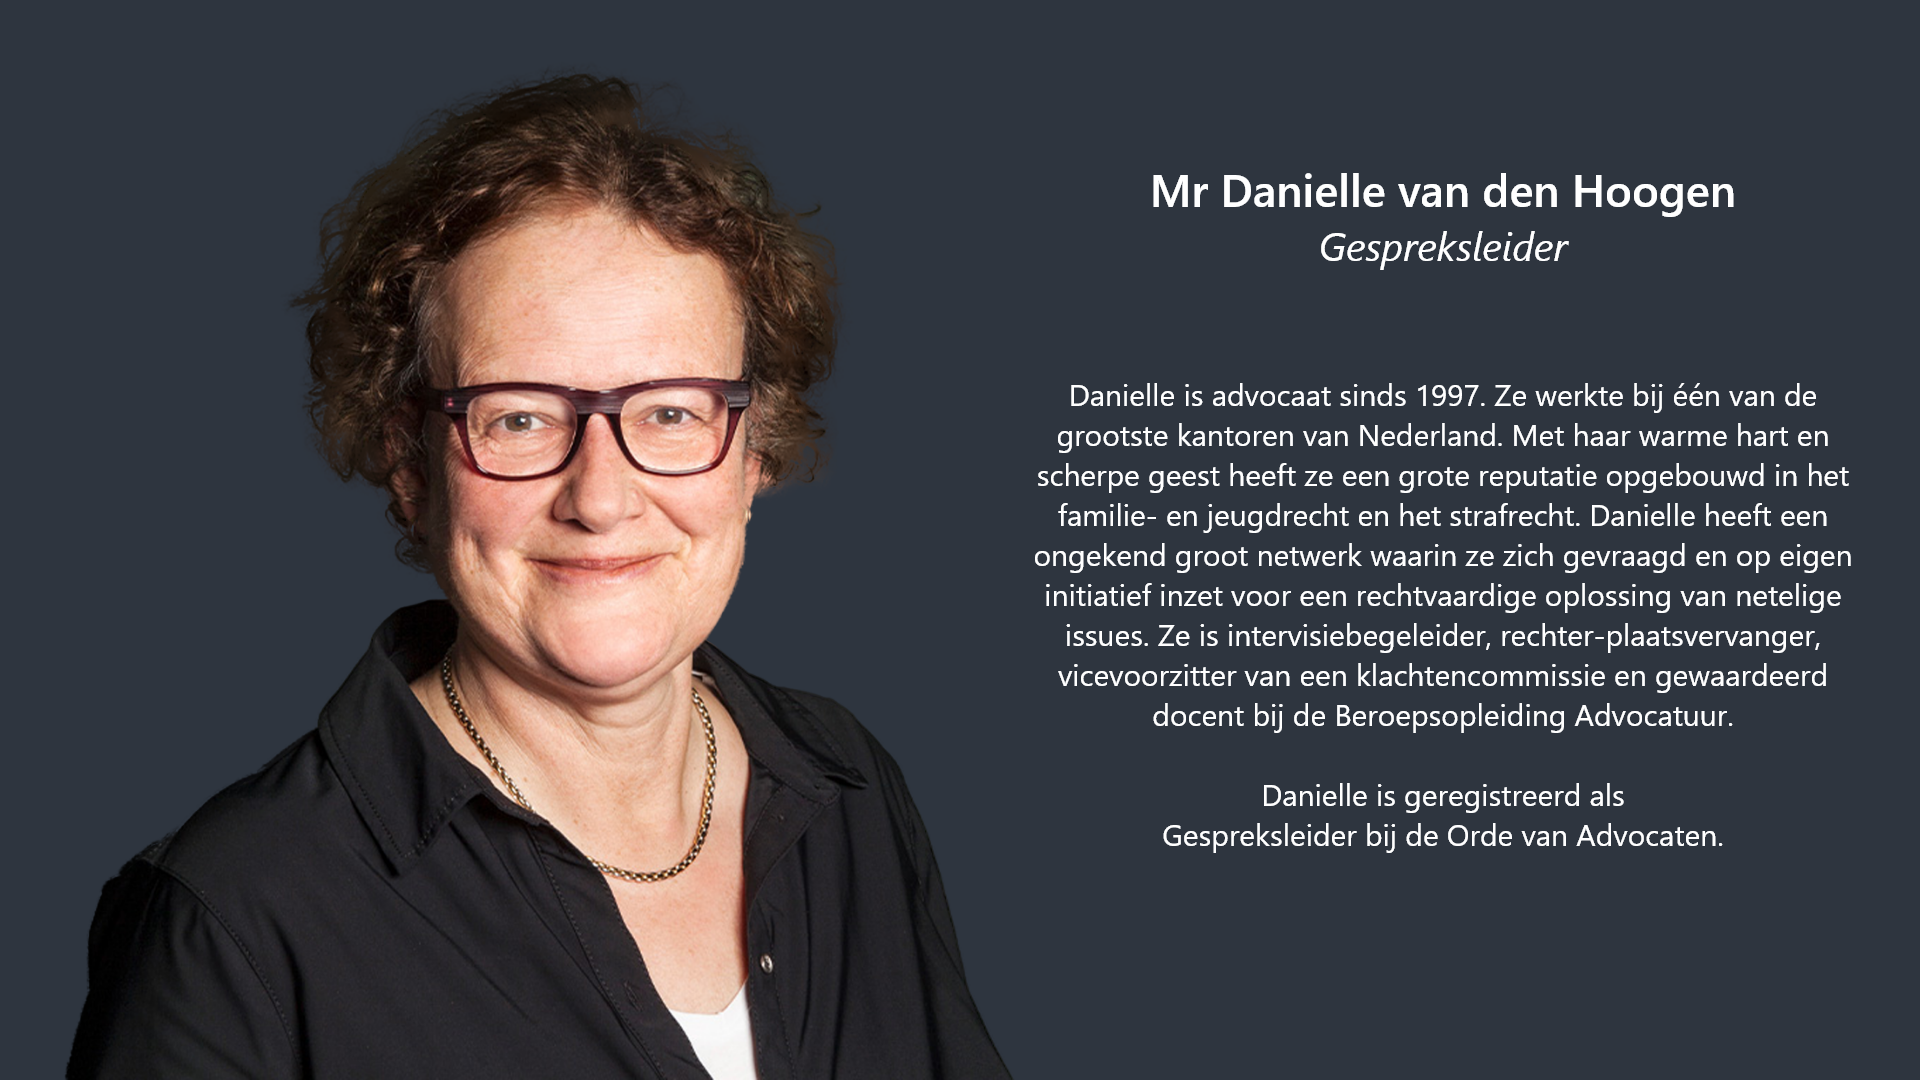 Danielle van den Hoogen